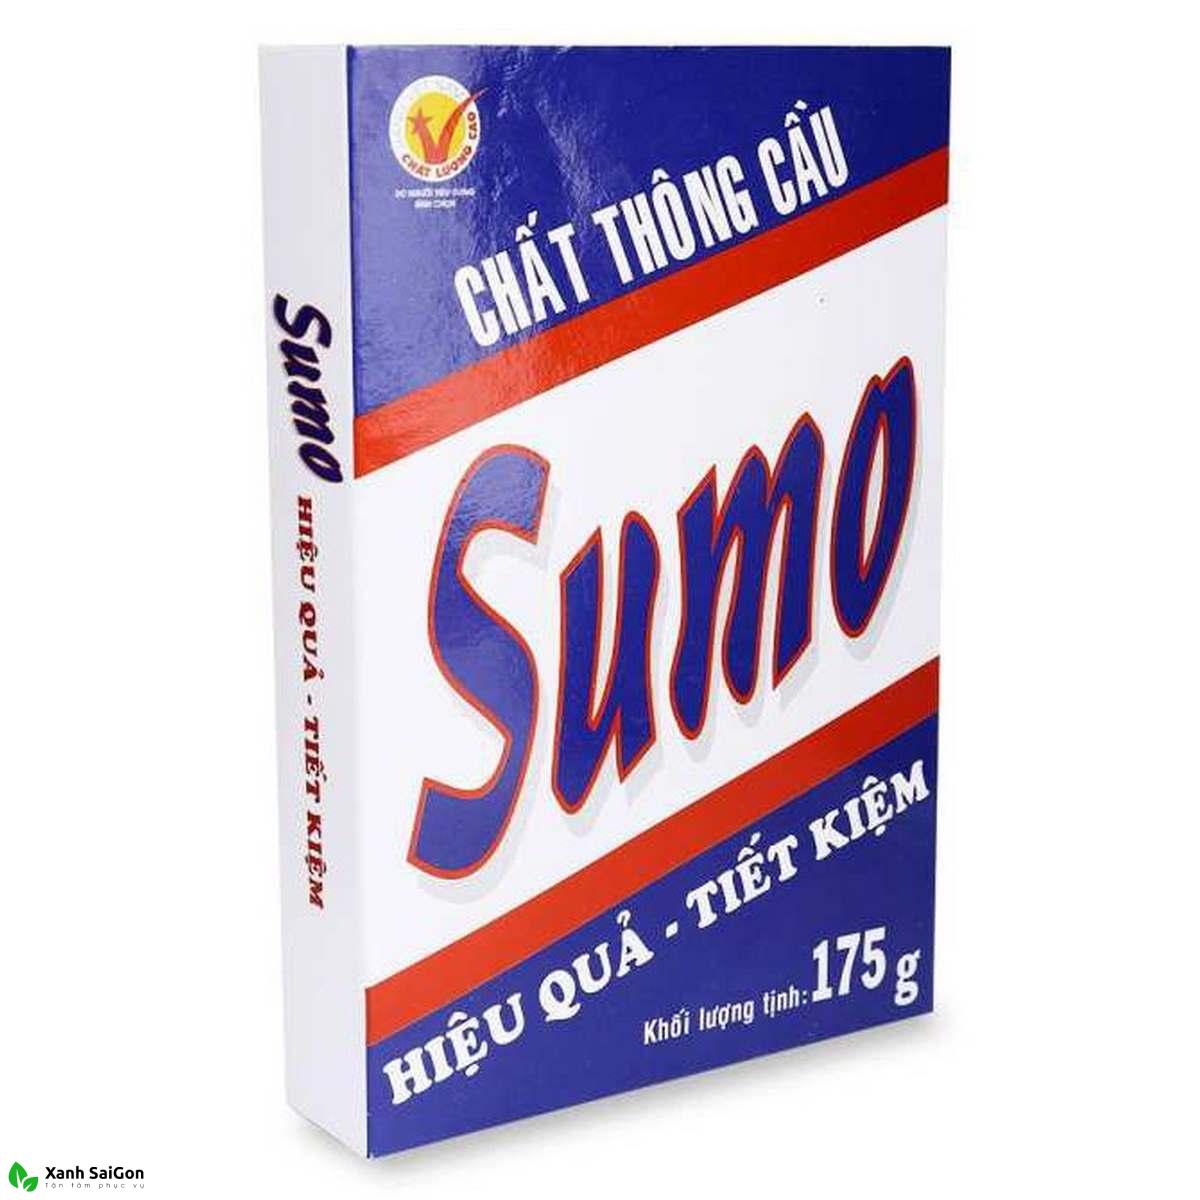 Mua bột thông bồn cầu Sumo ở đâu? Cách sử dụng như thế nào?